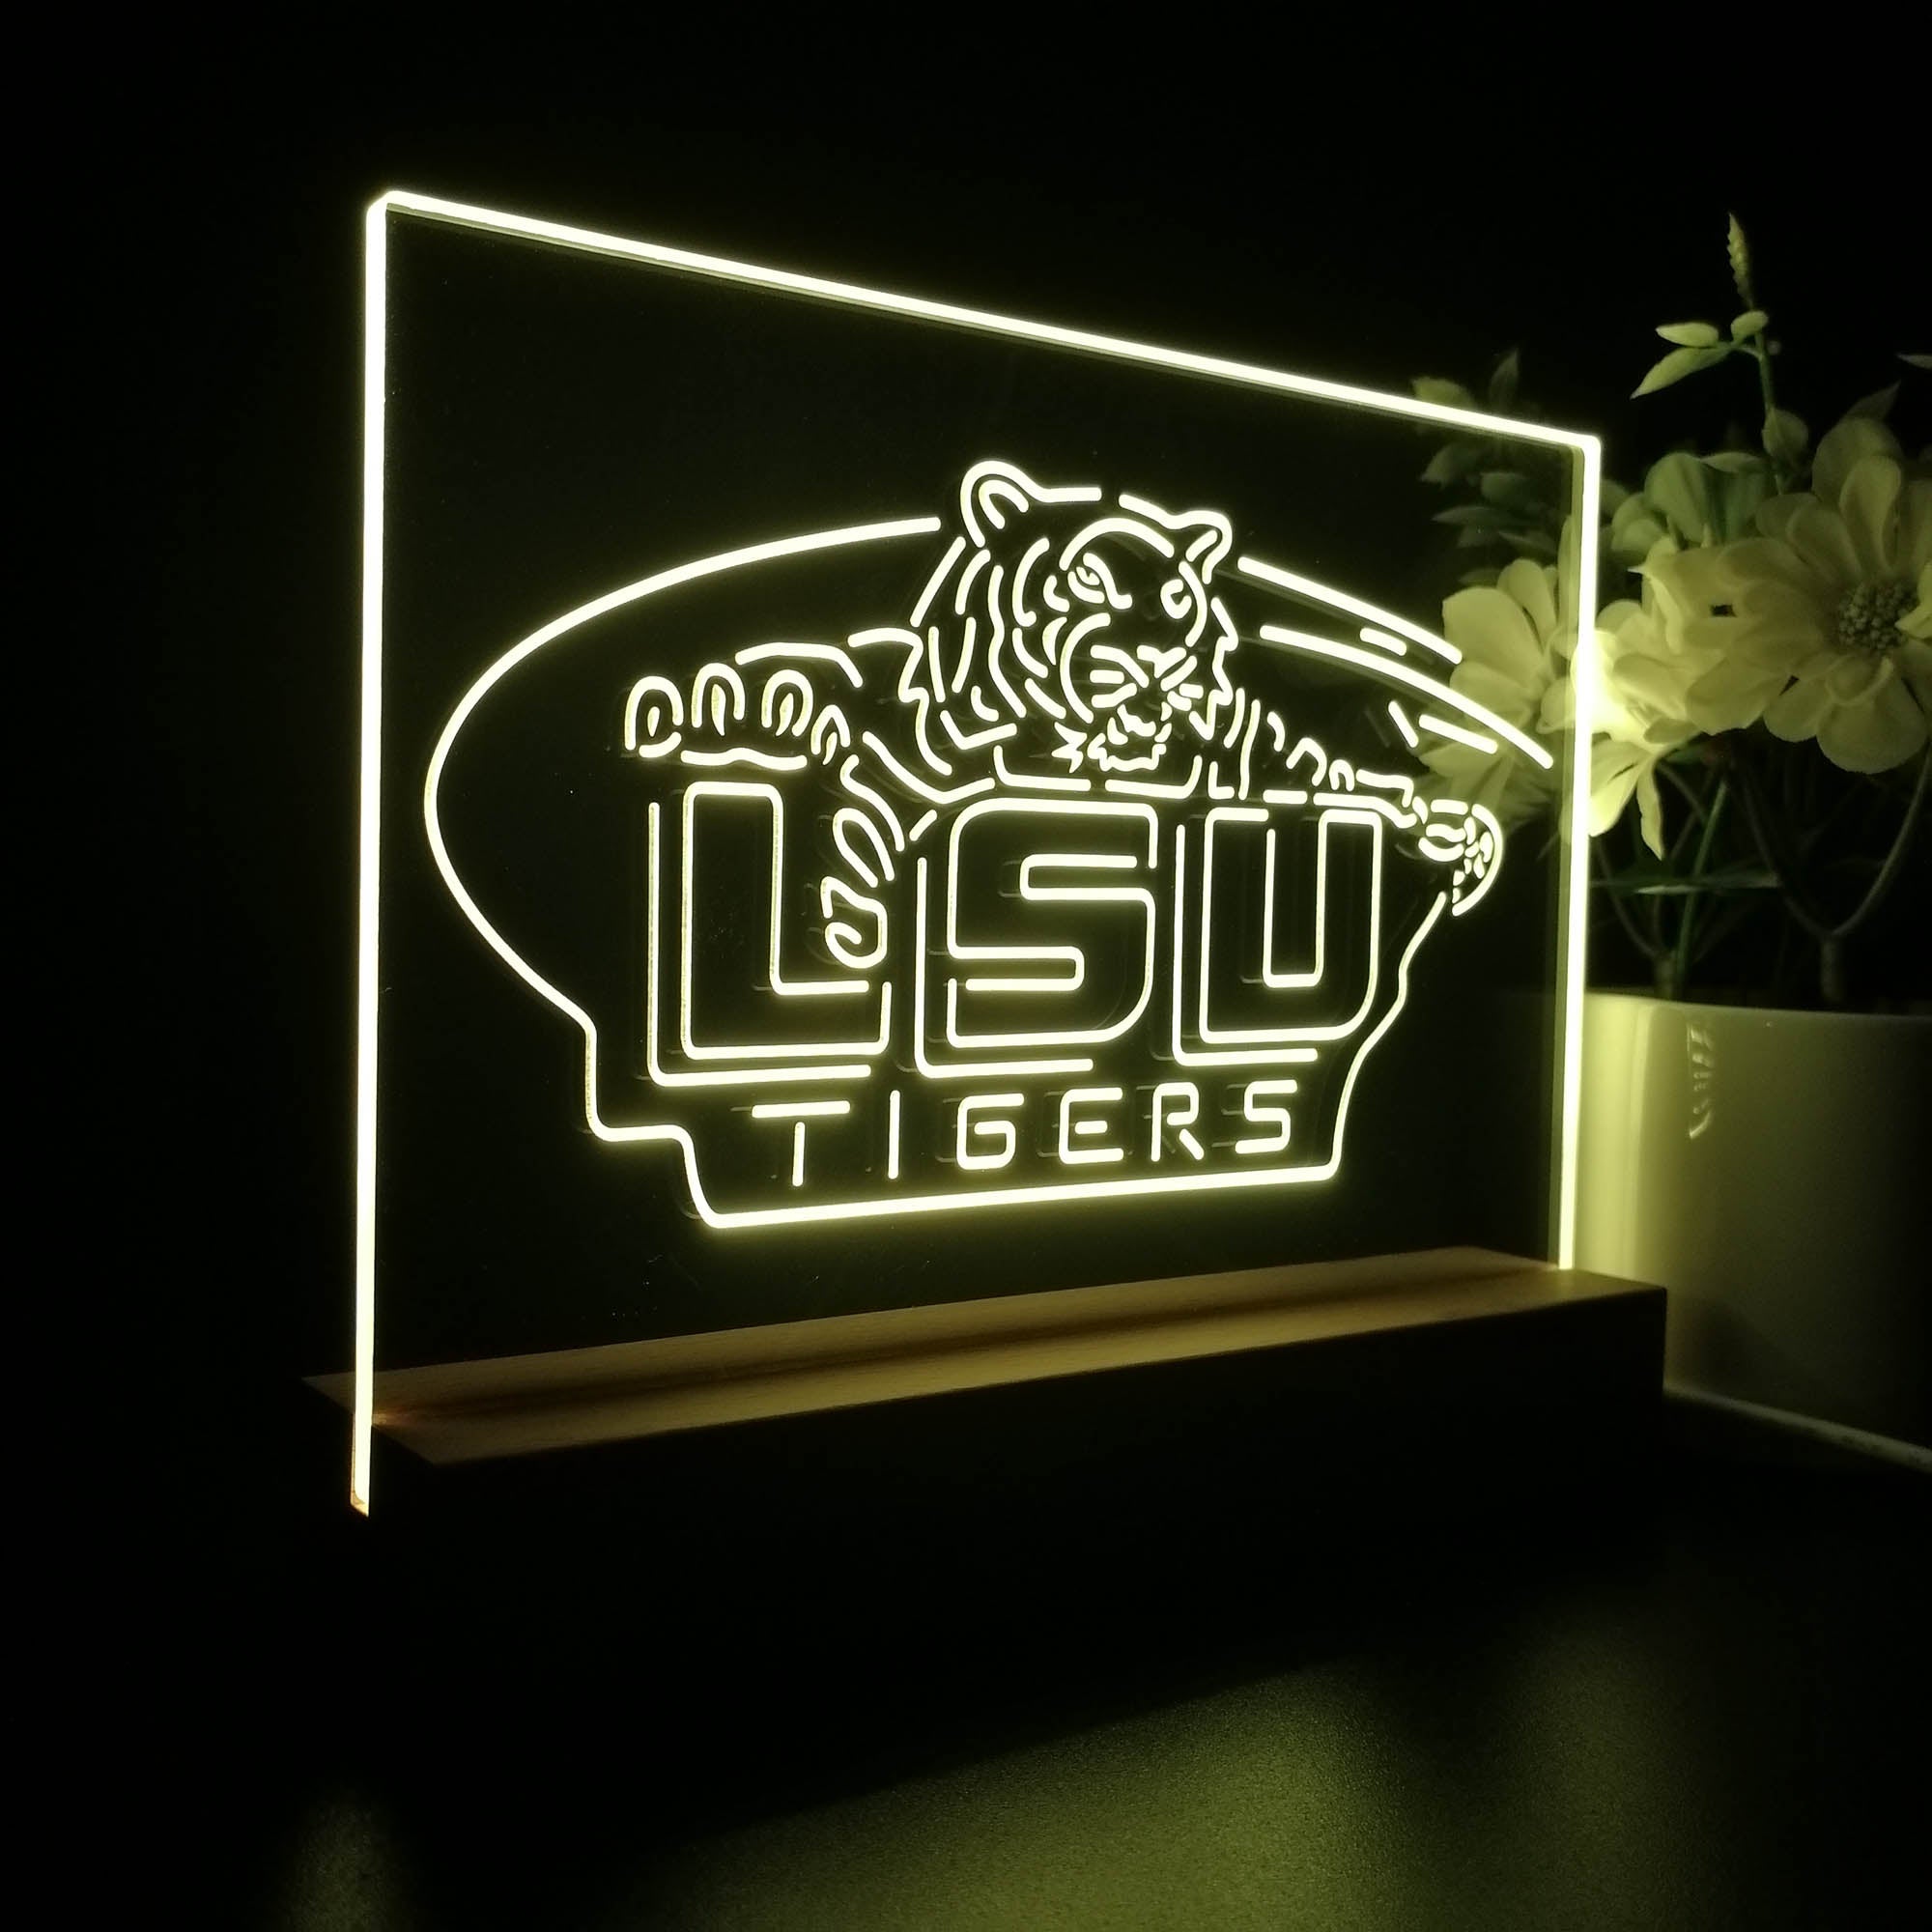 LSU Tigers Sport Team Night Light 3D Illusion Lamp